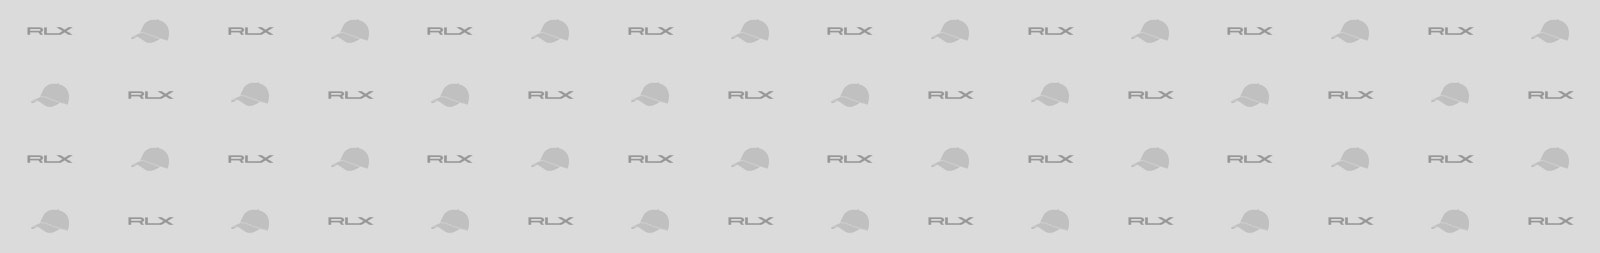 RLX Caps